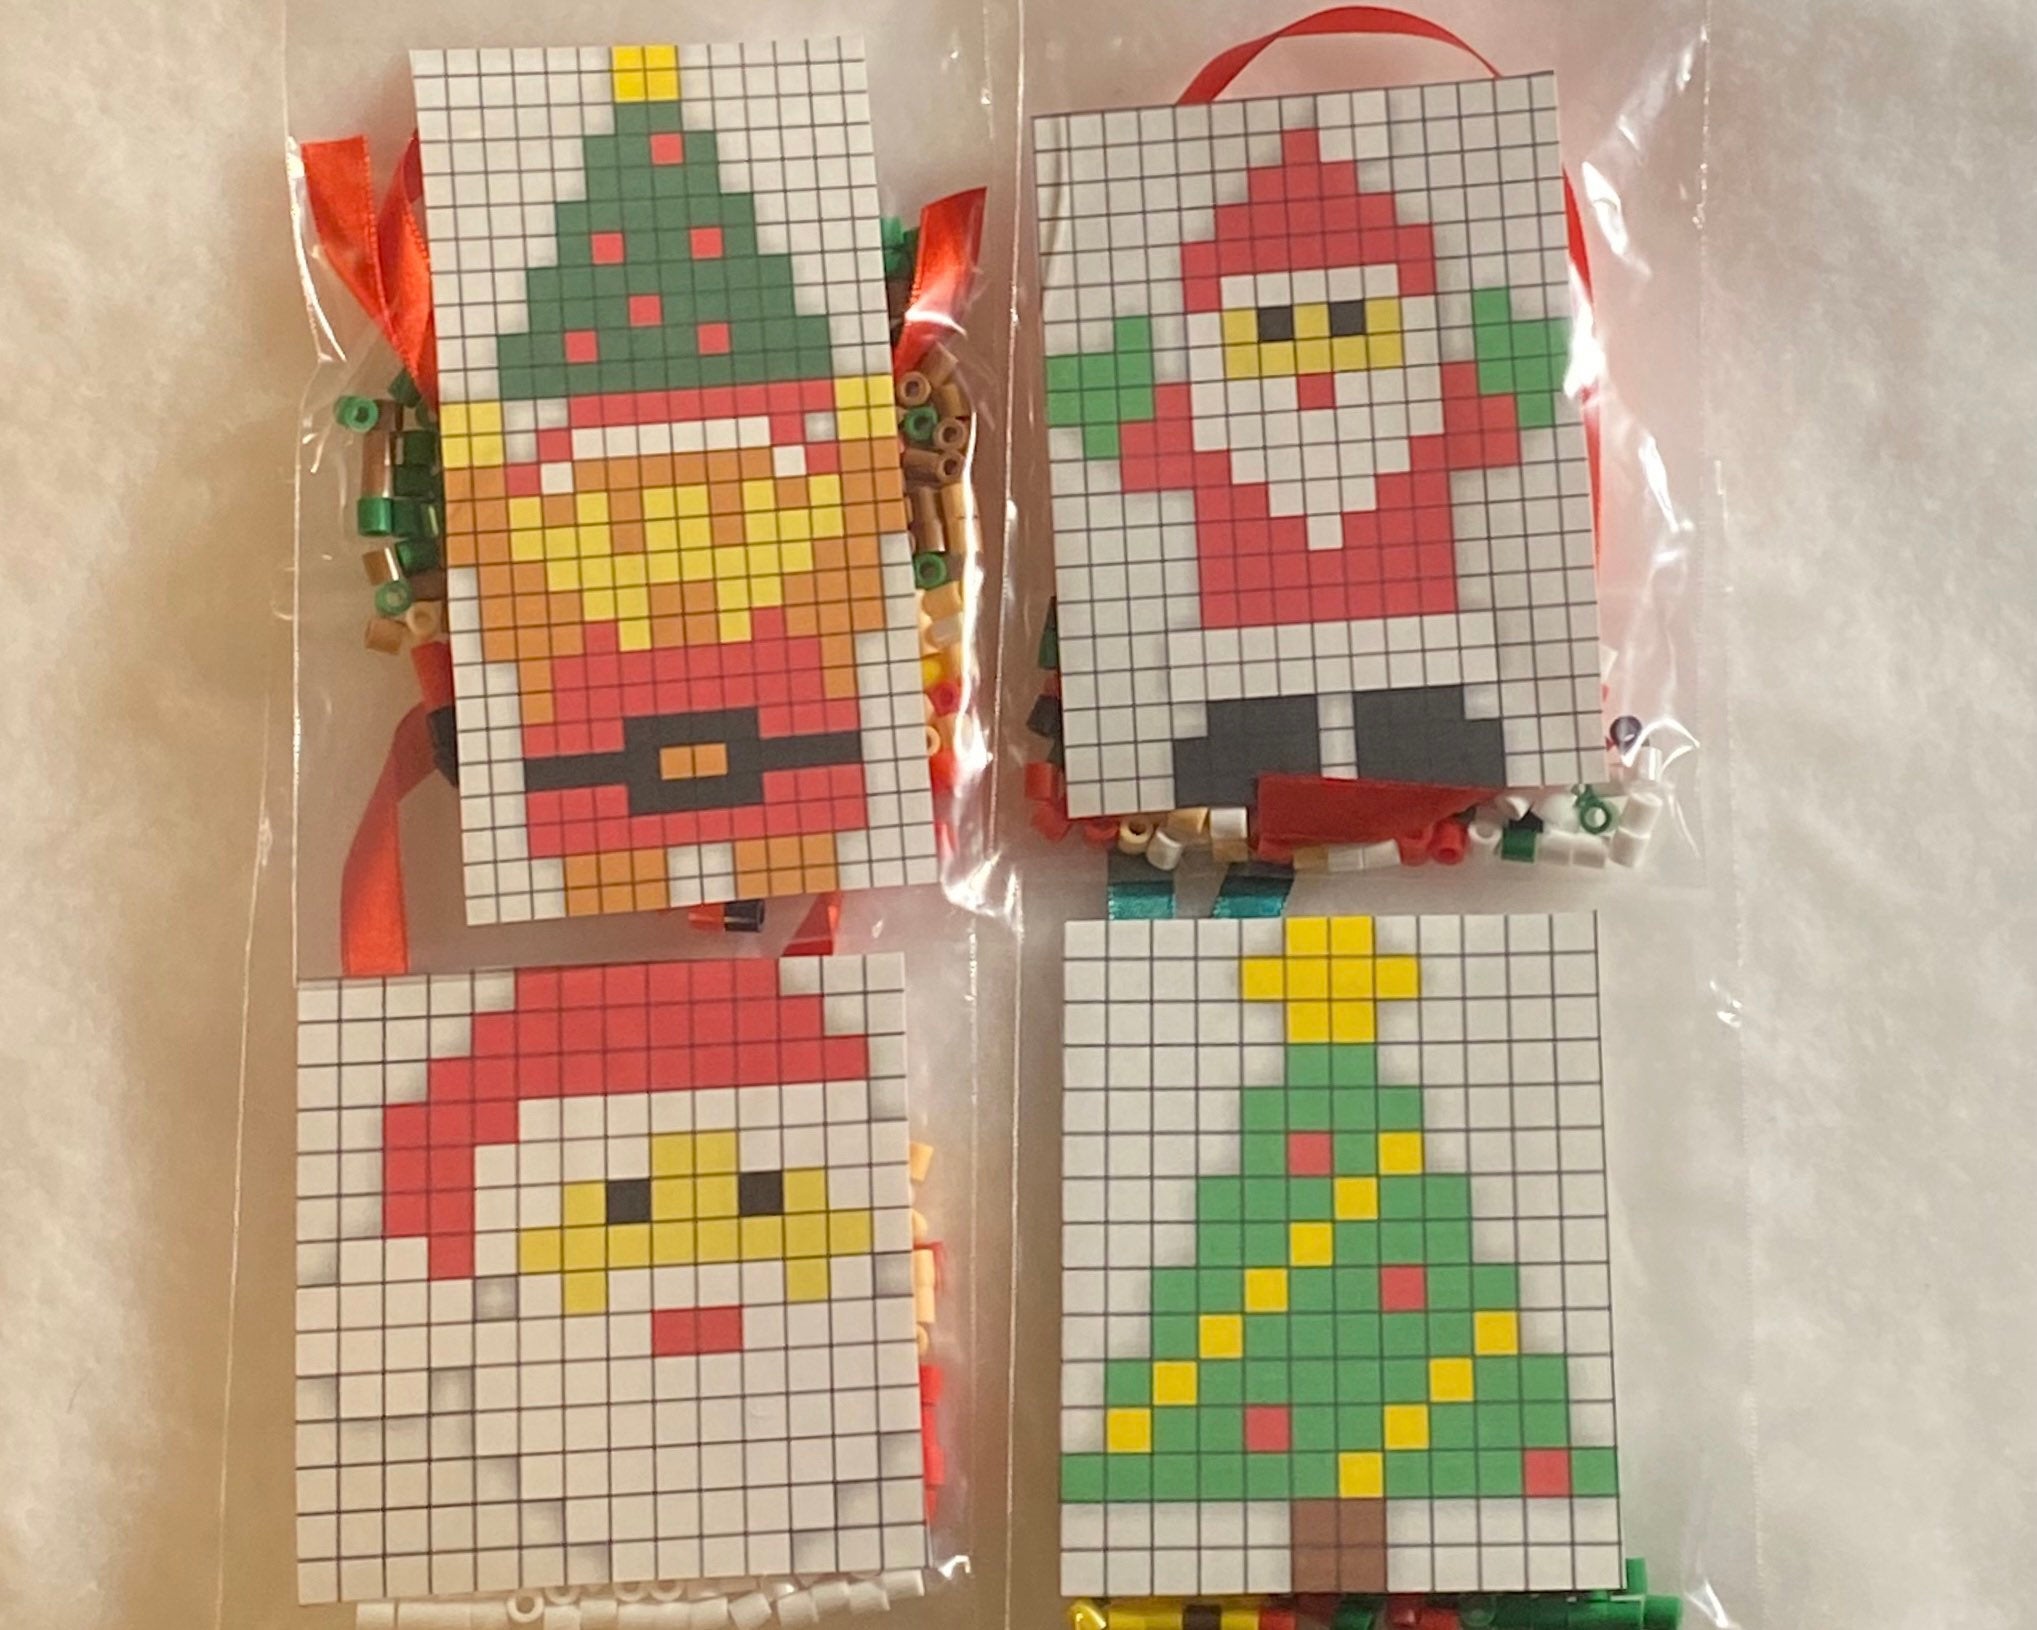 Perler Beads 3d Christmas Tree Beading Kit for sale online